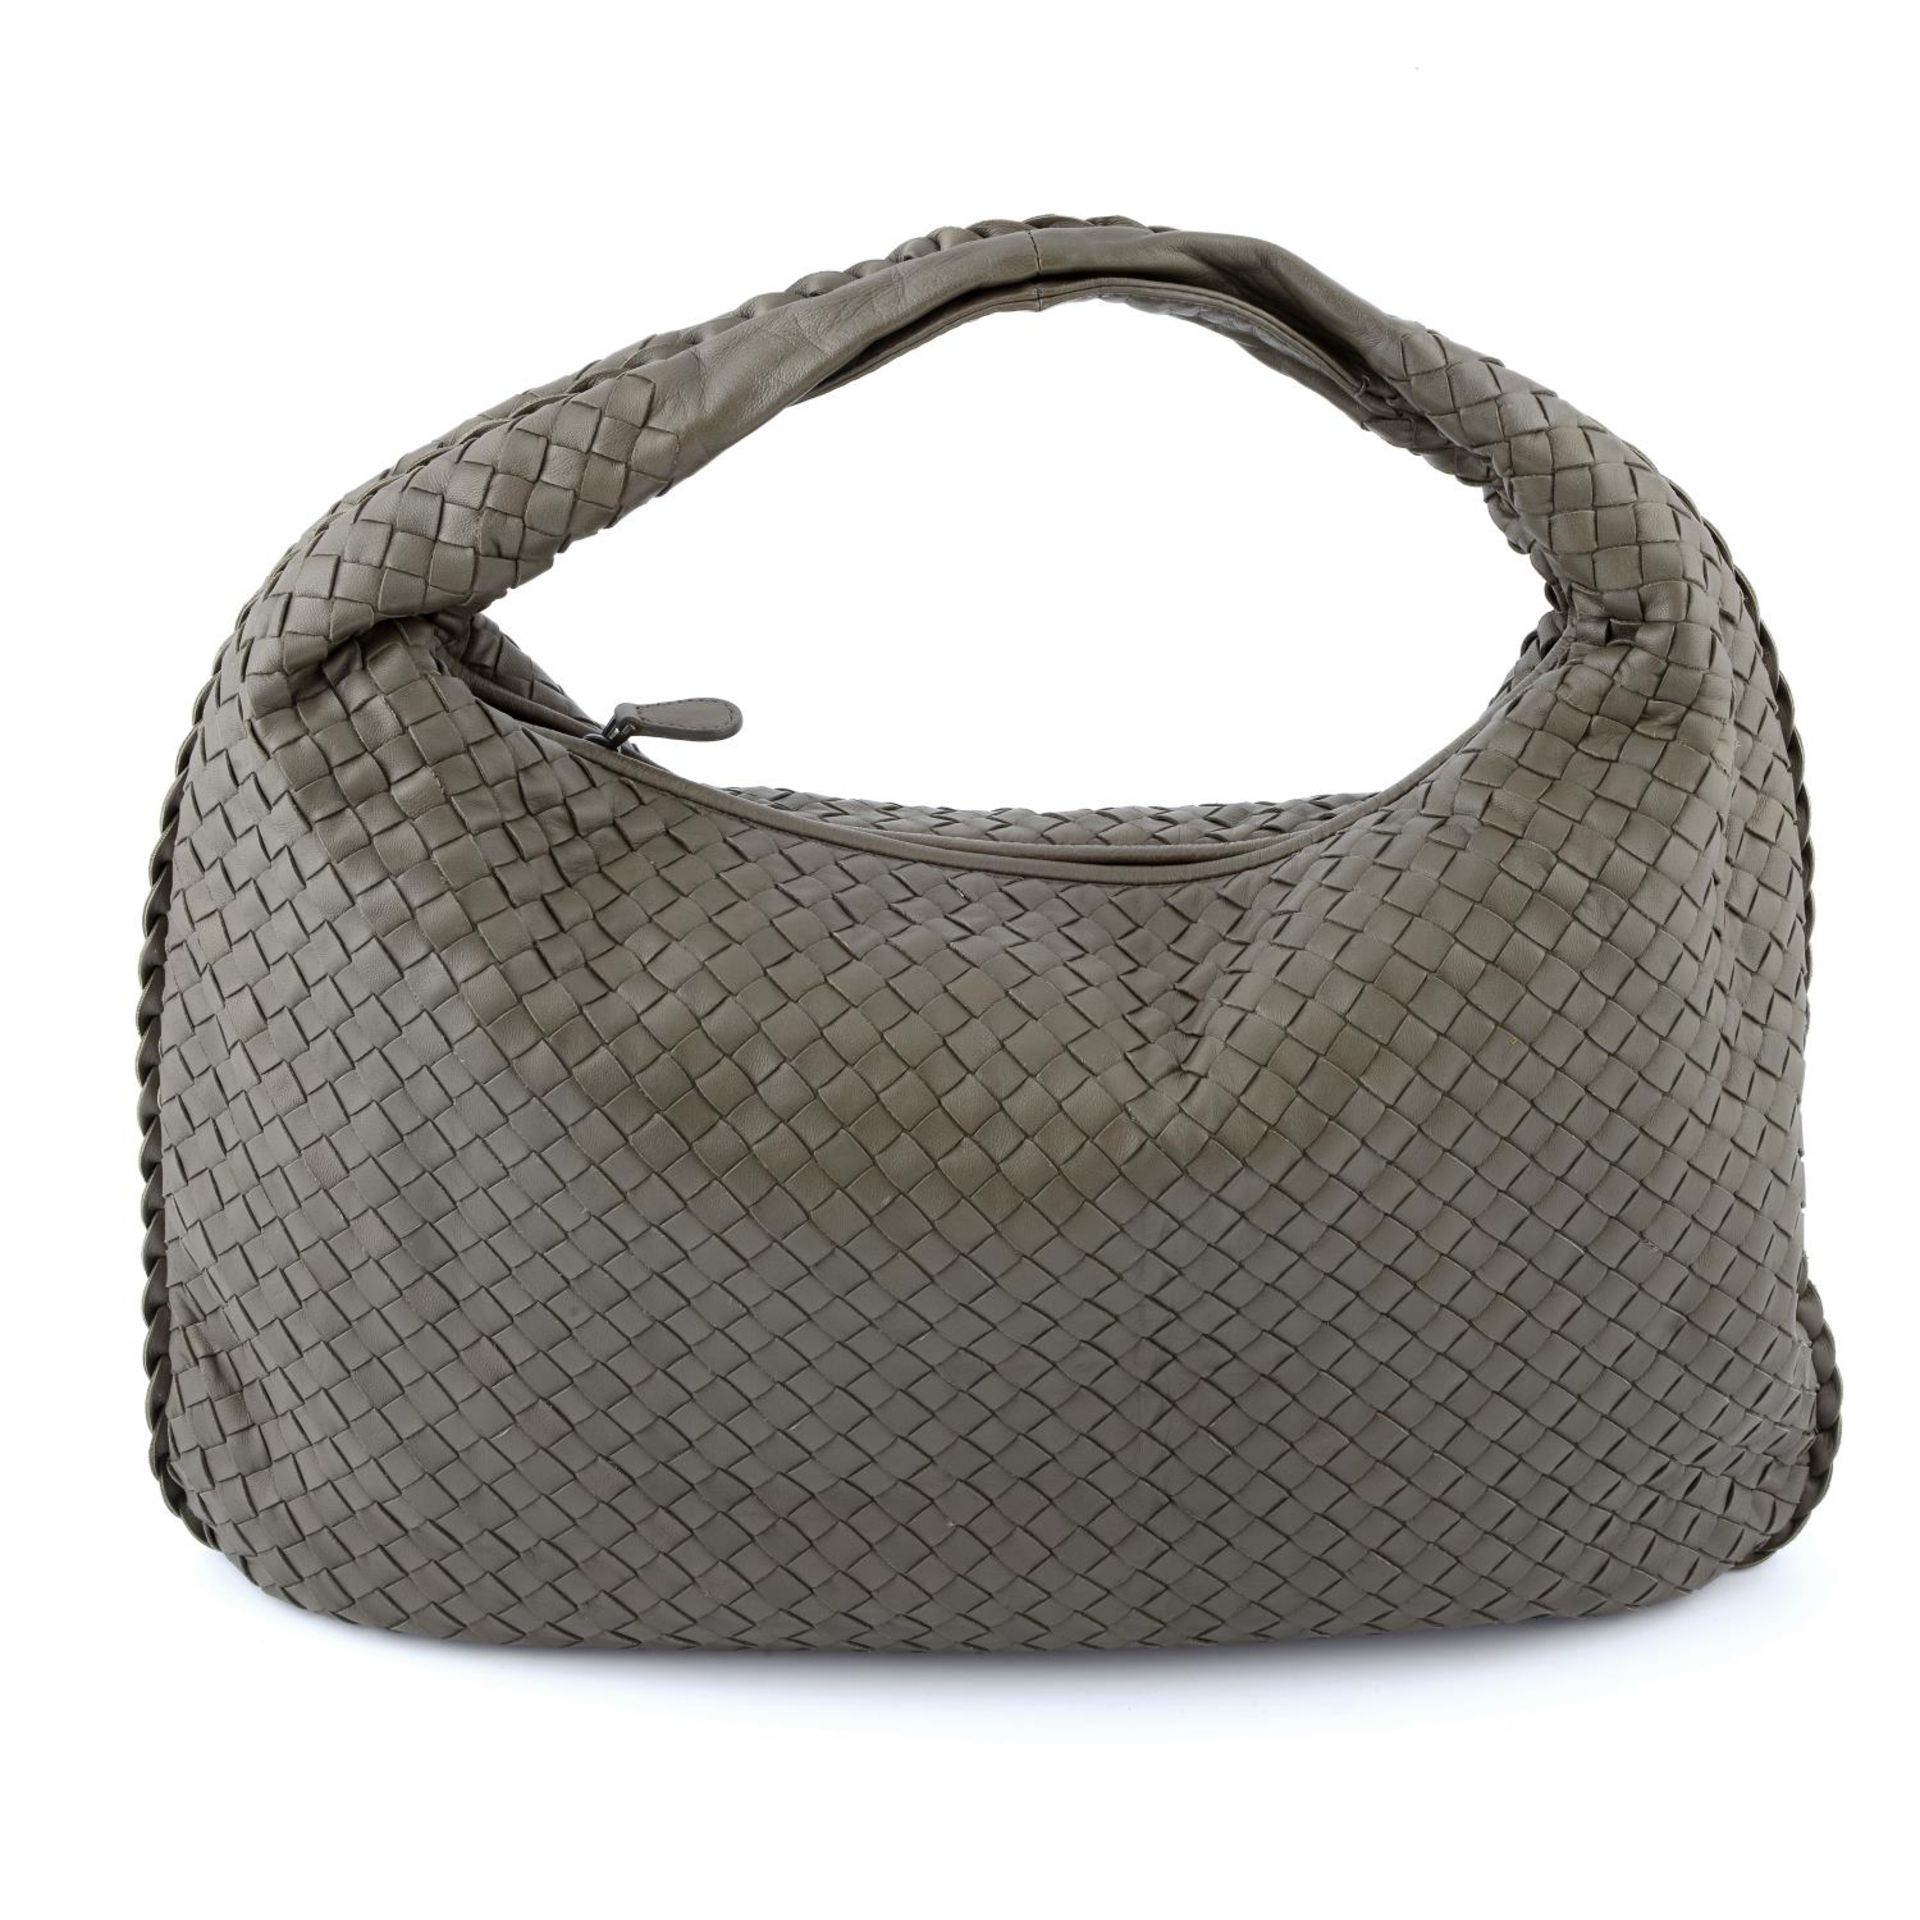 BOTTEGA VENETA - a medium Nappa Intrecciato Veneta hobo handbag. - Image 2 of 4